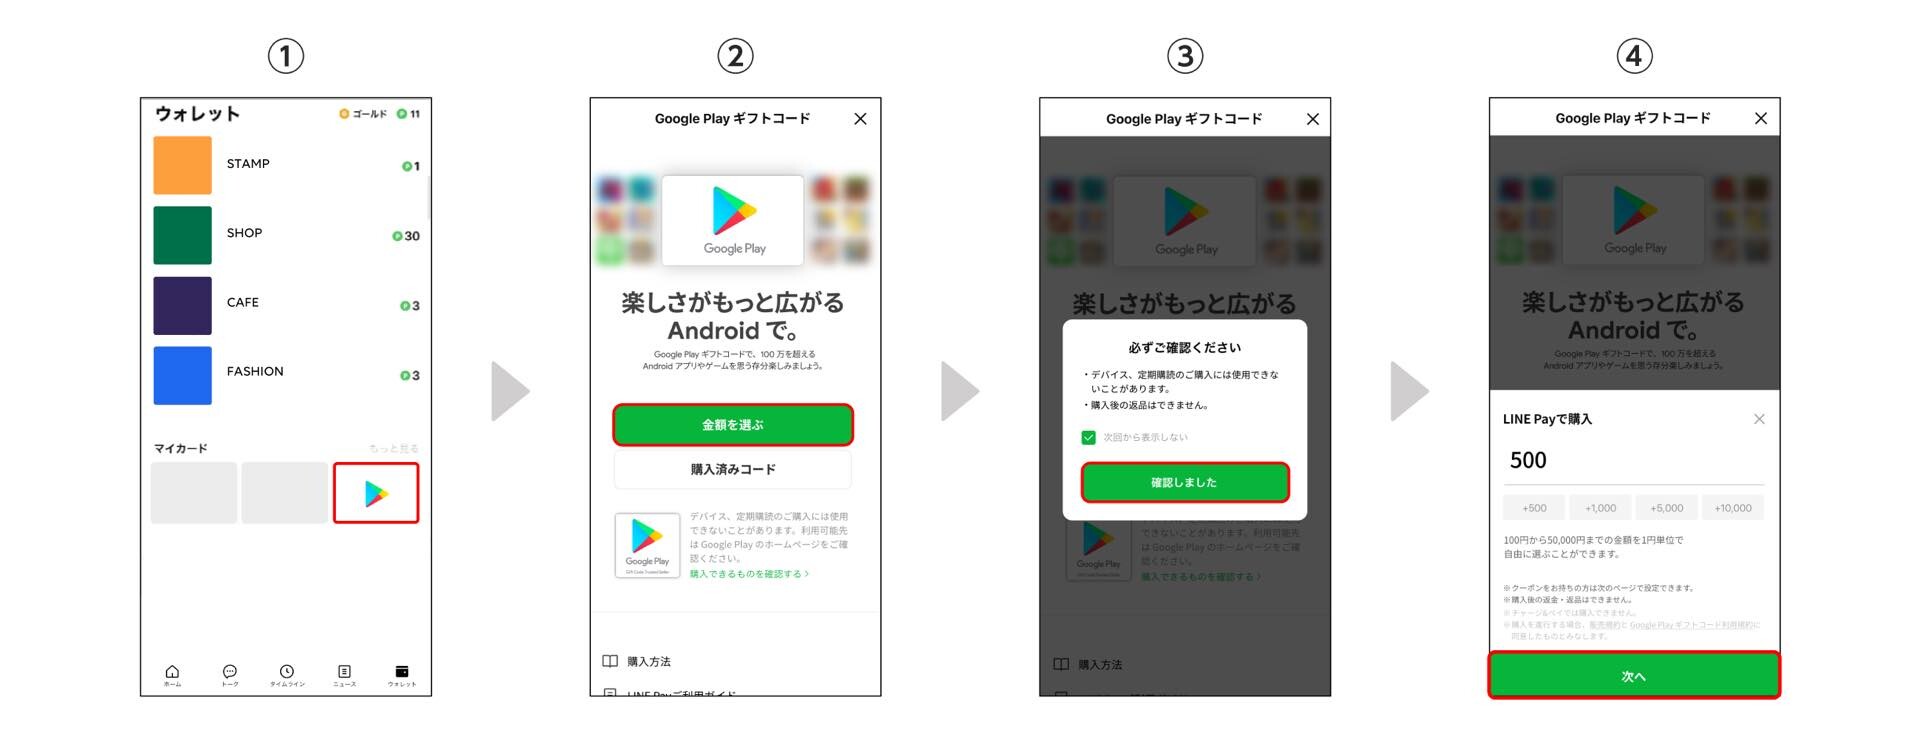 Lineアプリ上から Google Play ギフトコード の購入が可能に 決済サービス Line Pay でアプリやゲームなどが支払えるように S Max